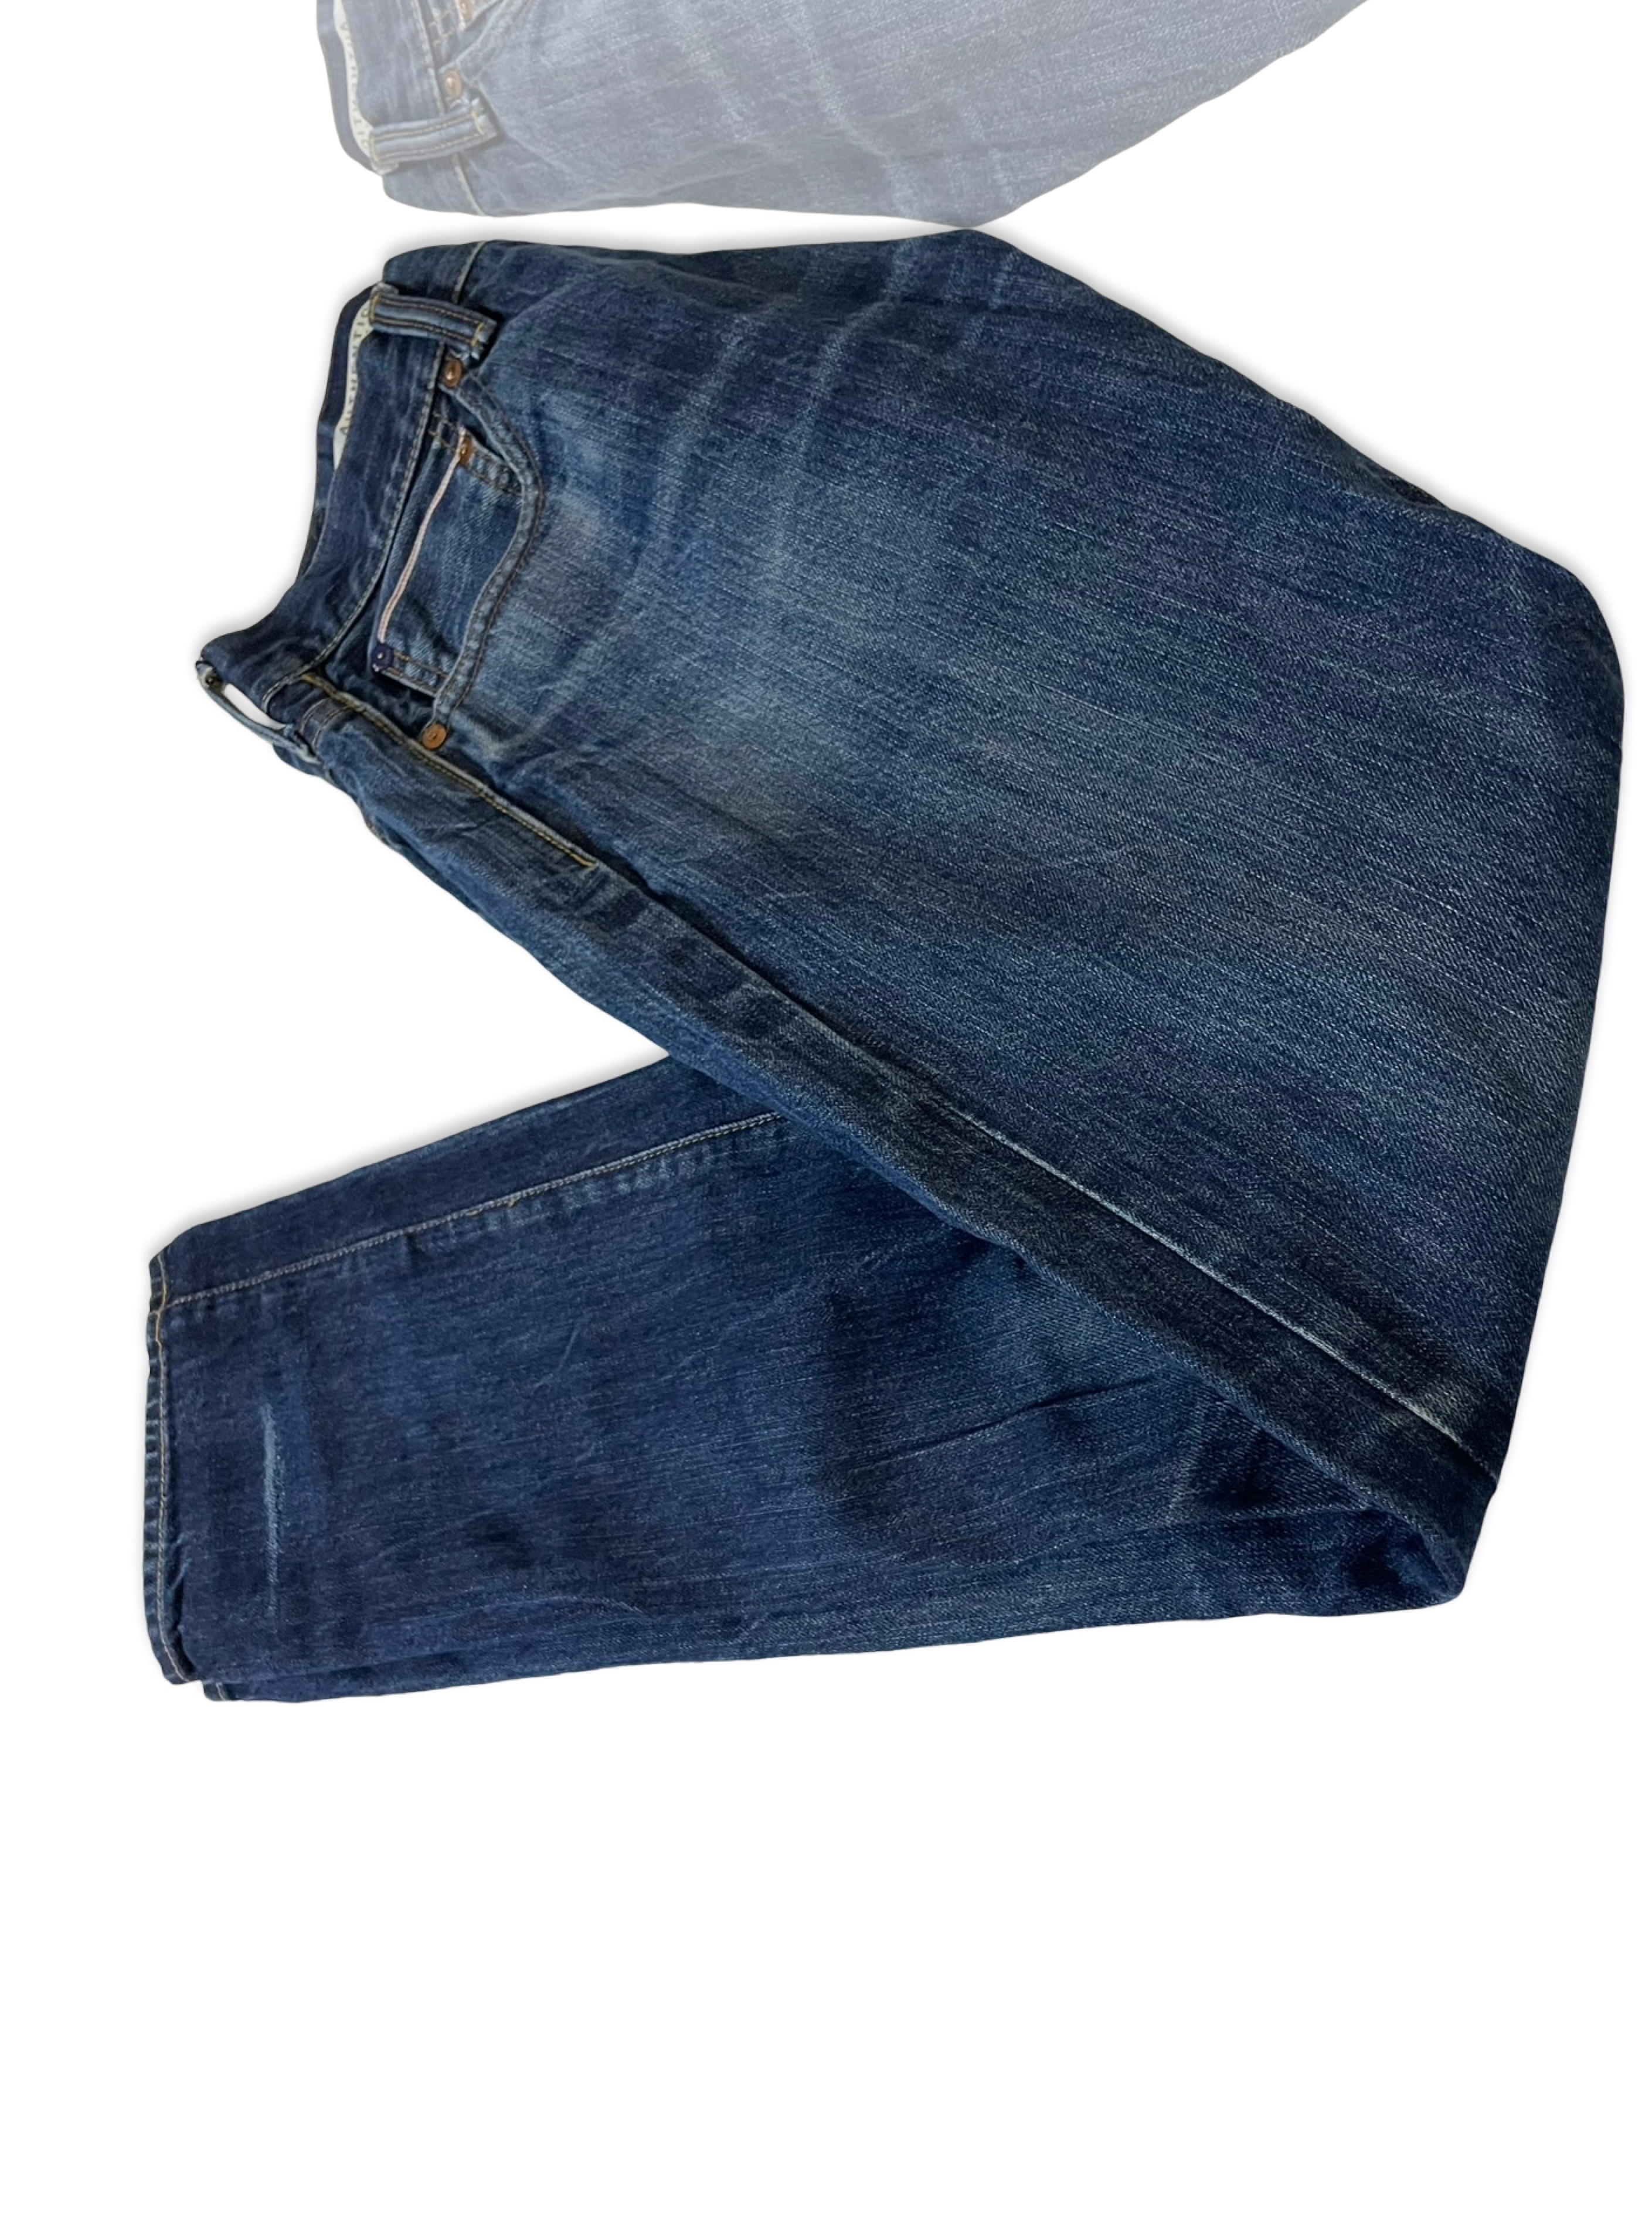 GAP Mens Jeans Skinny Fit Blue Distressed Denim SIZE W32 L32 Waist 32" Leg 32"